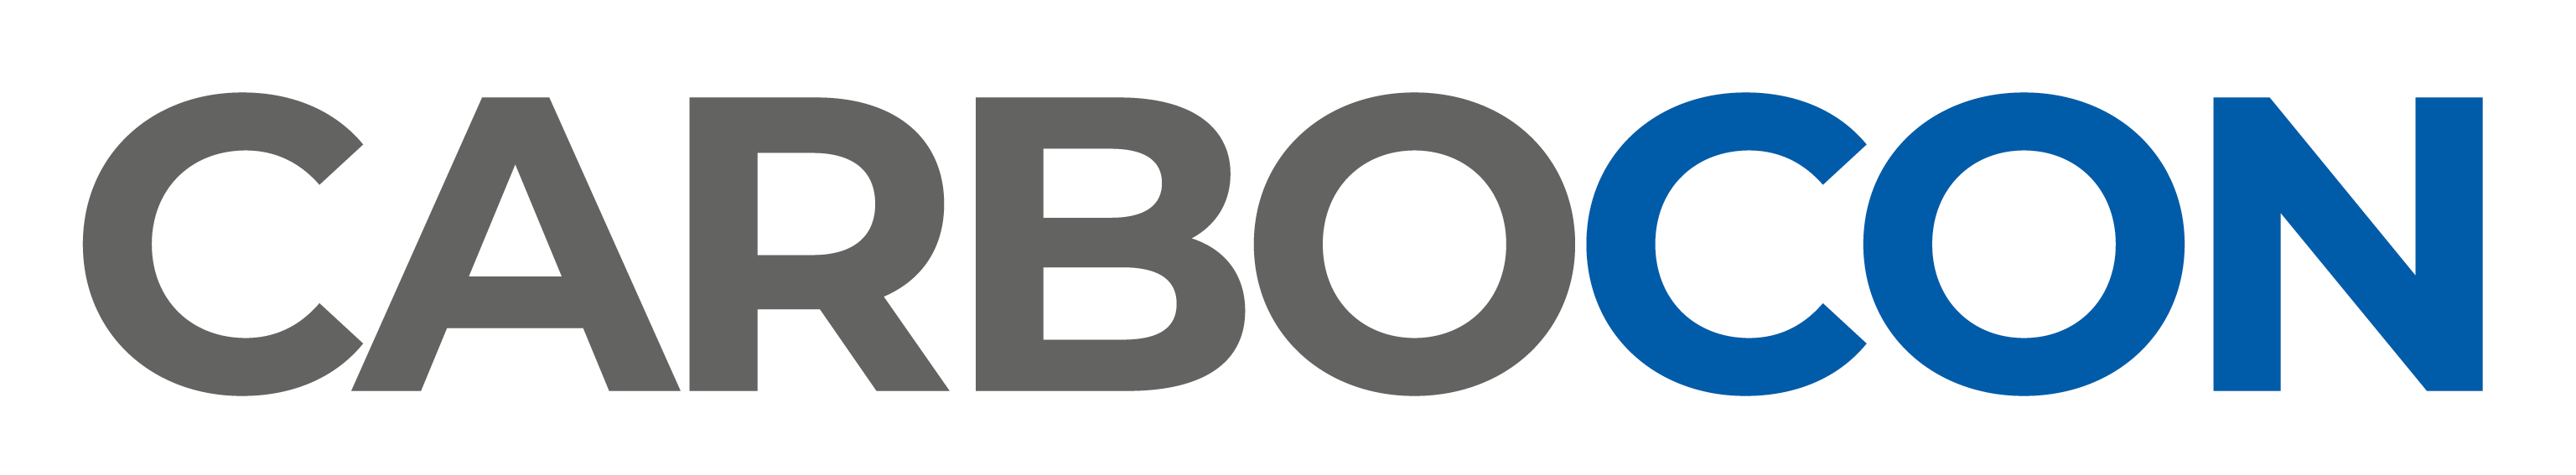 Carbocon Logo